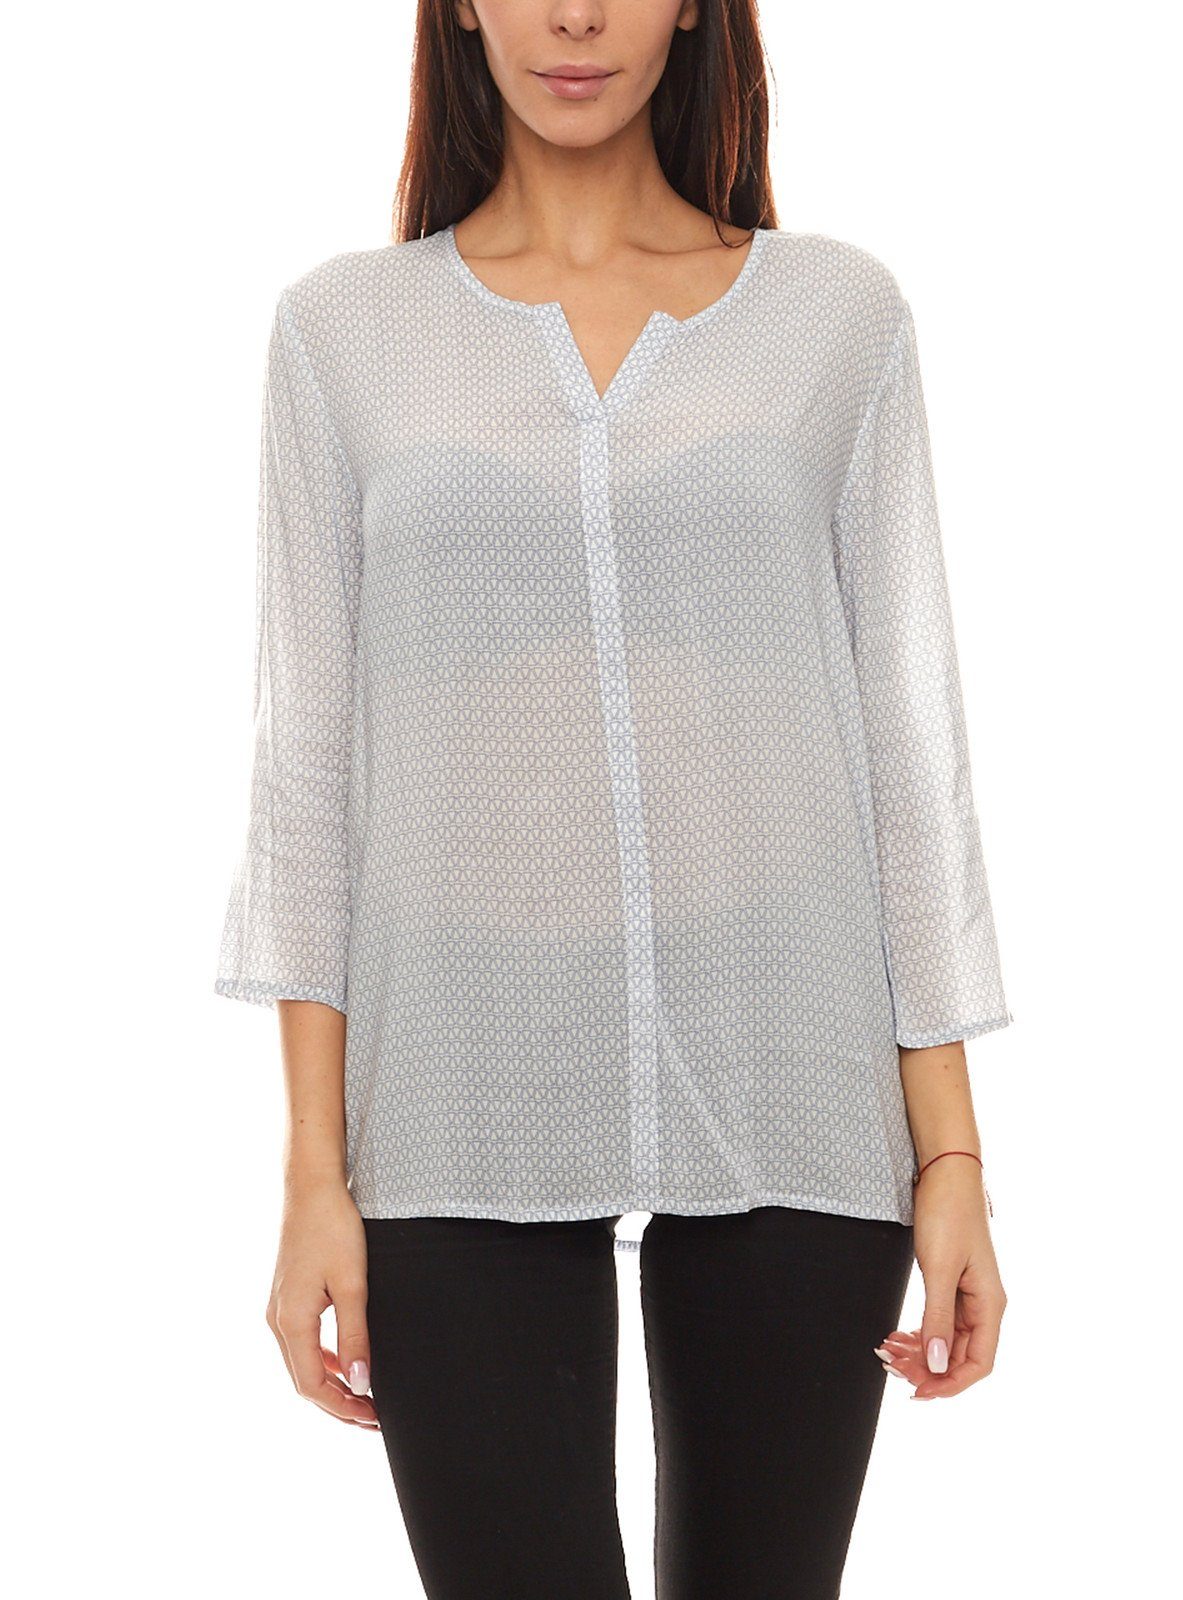 re.draft Blusentop »re.draft Bluse Shirt gemütliche Damen 3/4-Arm-Bluse  Frühlings-Shirt mit Tunika-Ausschnitt Blau/Weiß« online kaufen | OTTO